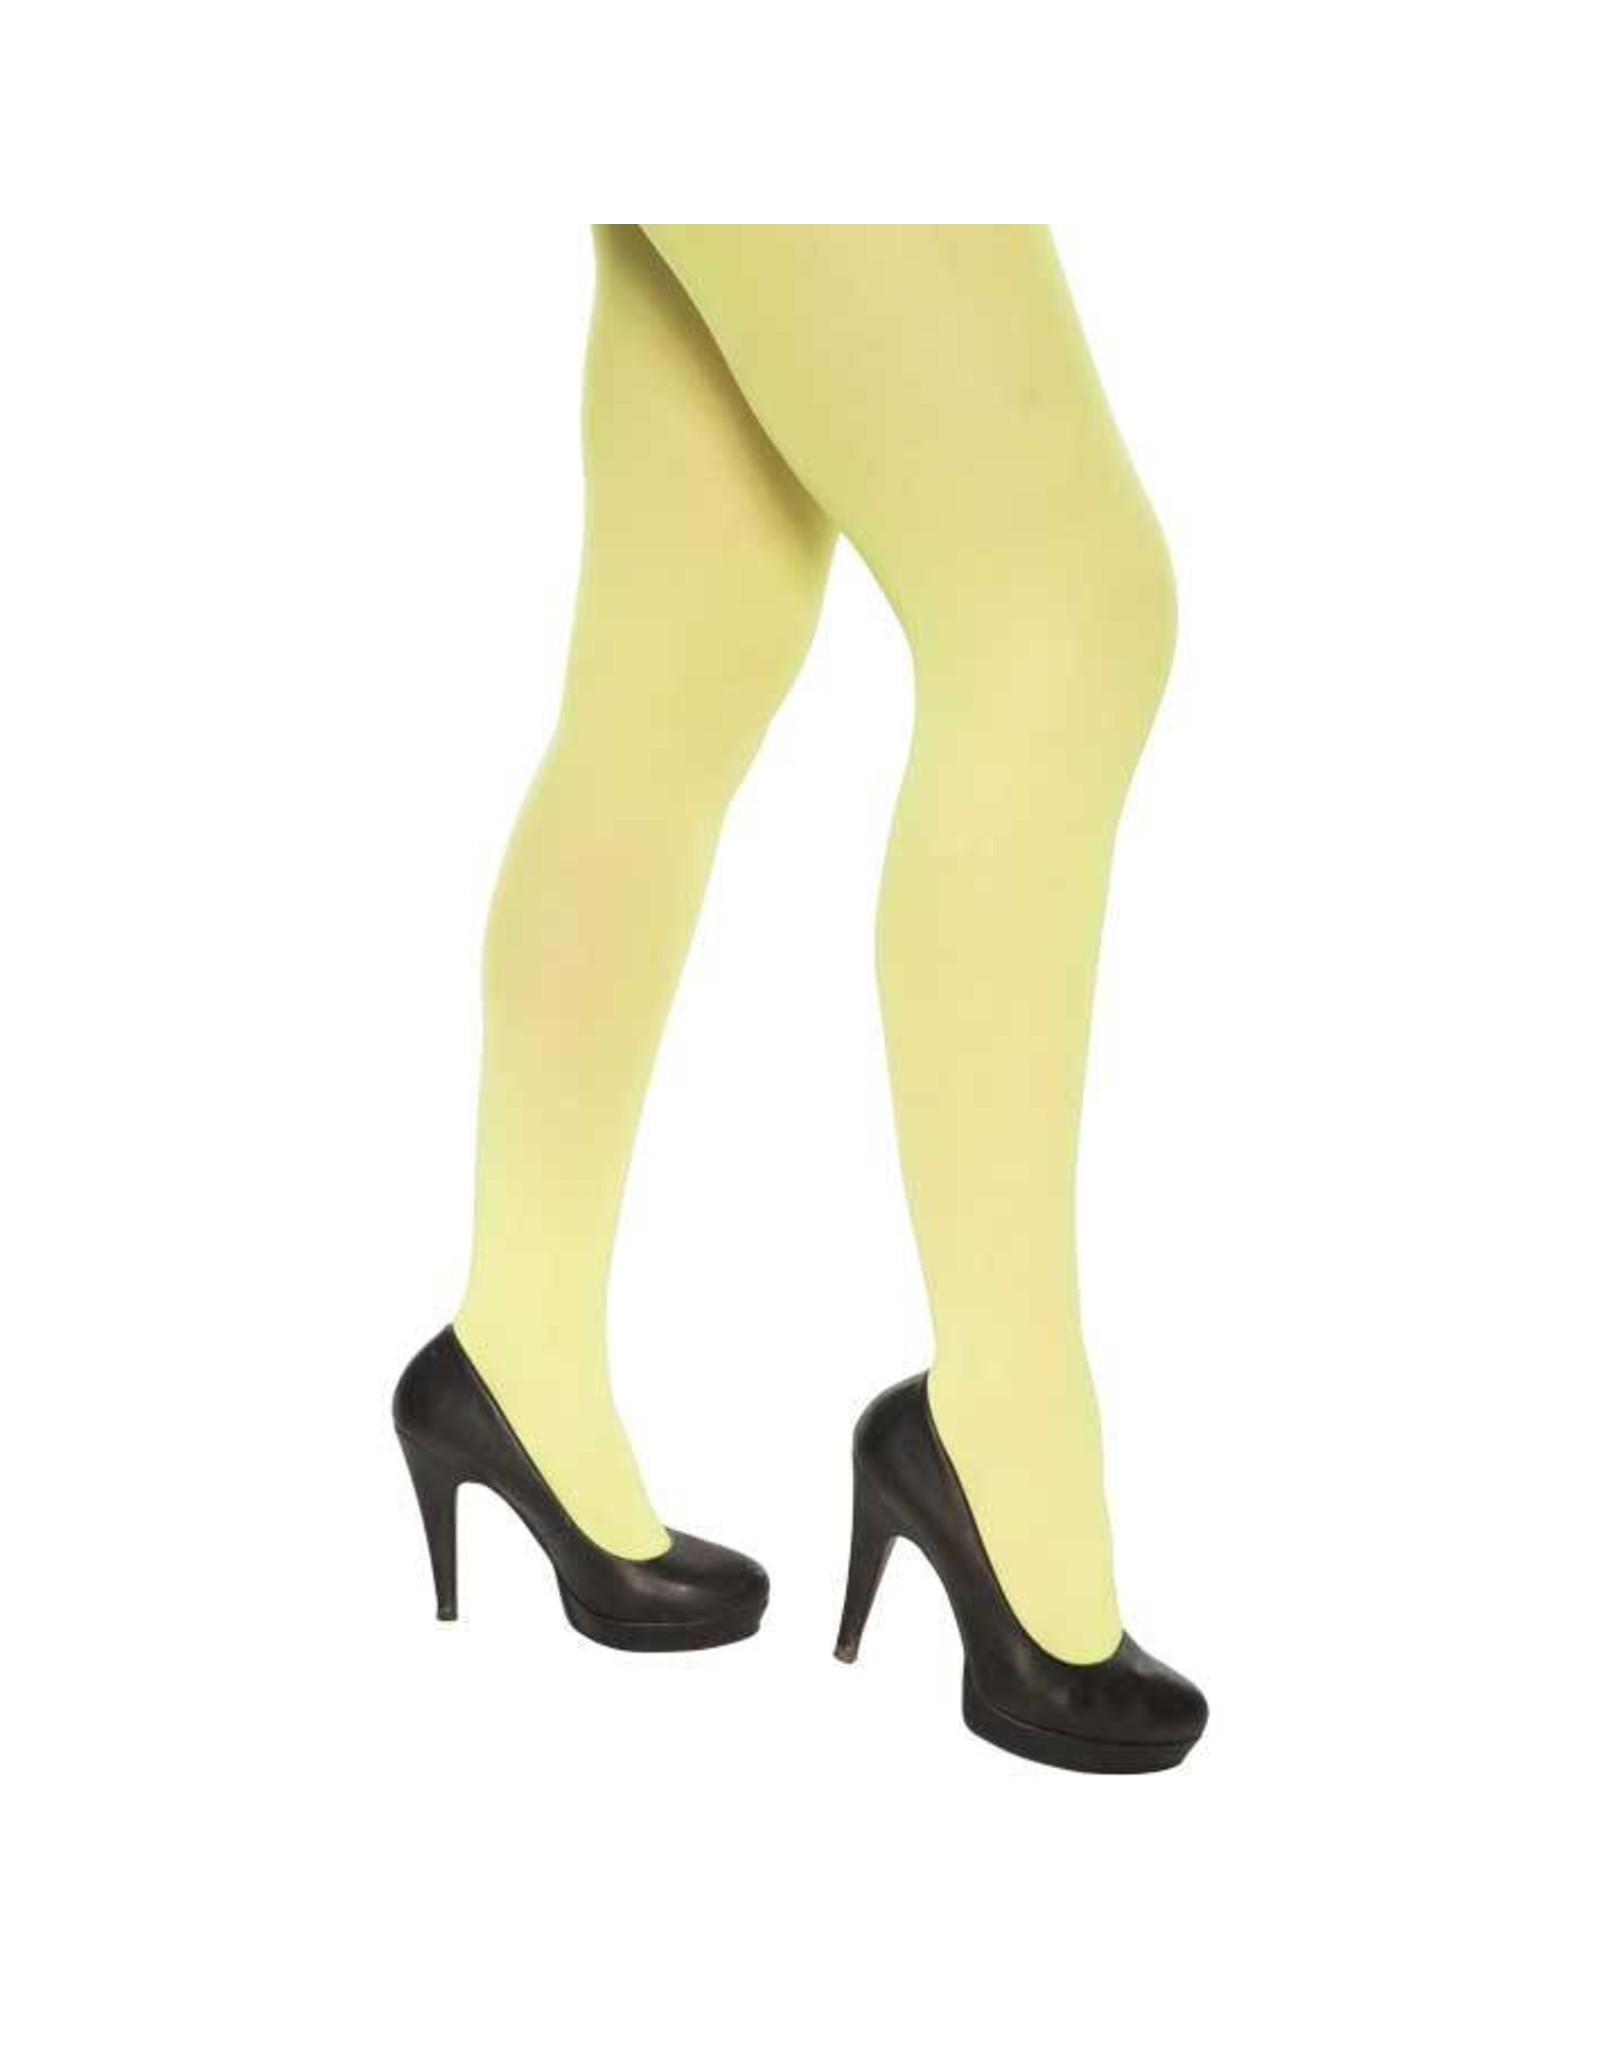 Panty fluor geel (60 denier)